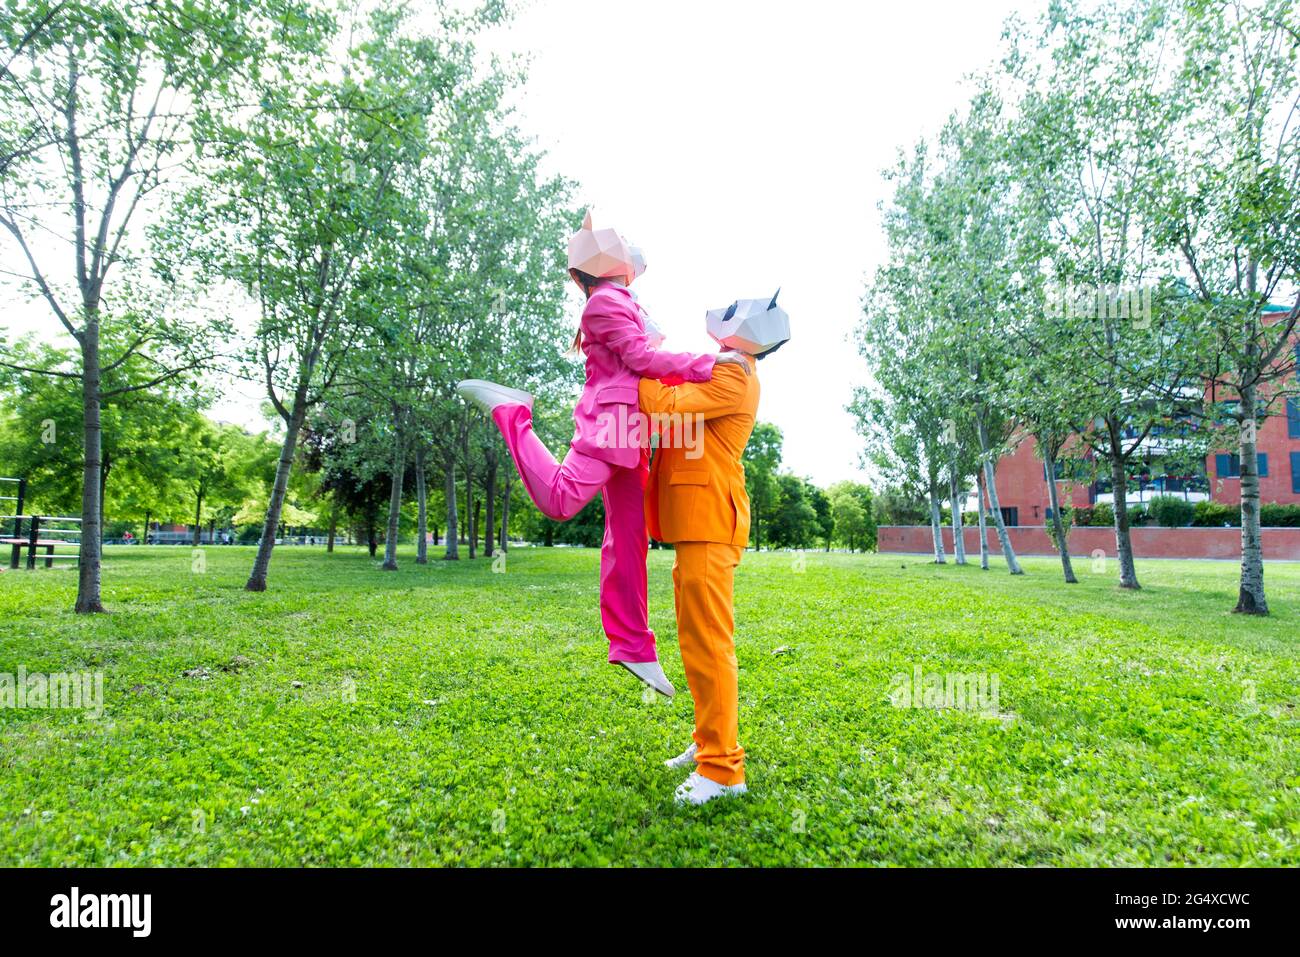 coupleÂ adulto indossa abiti vivaci e maschere animali che giocano nel parco pubblico Foto Stock